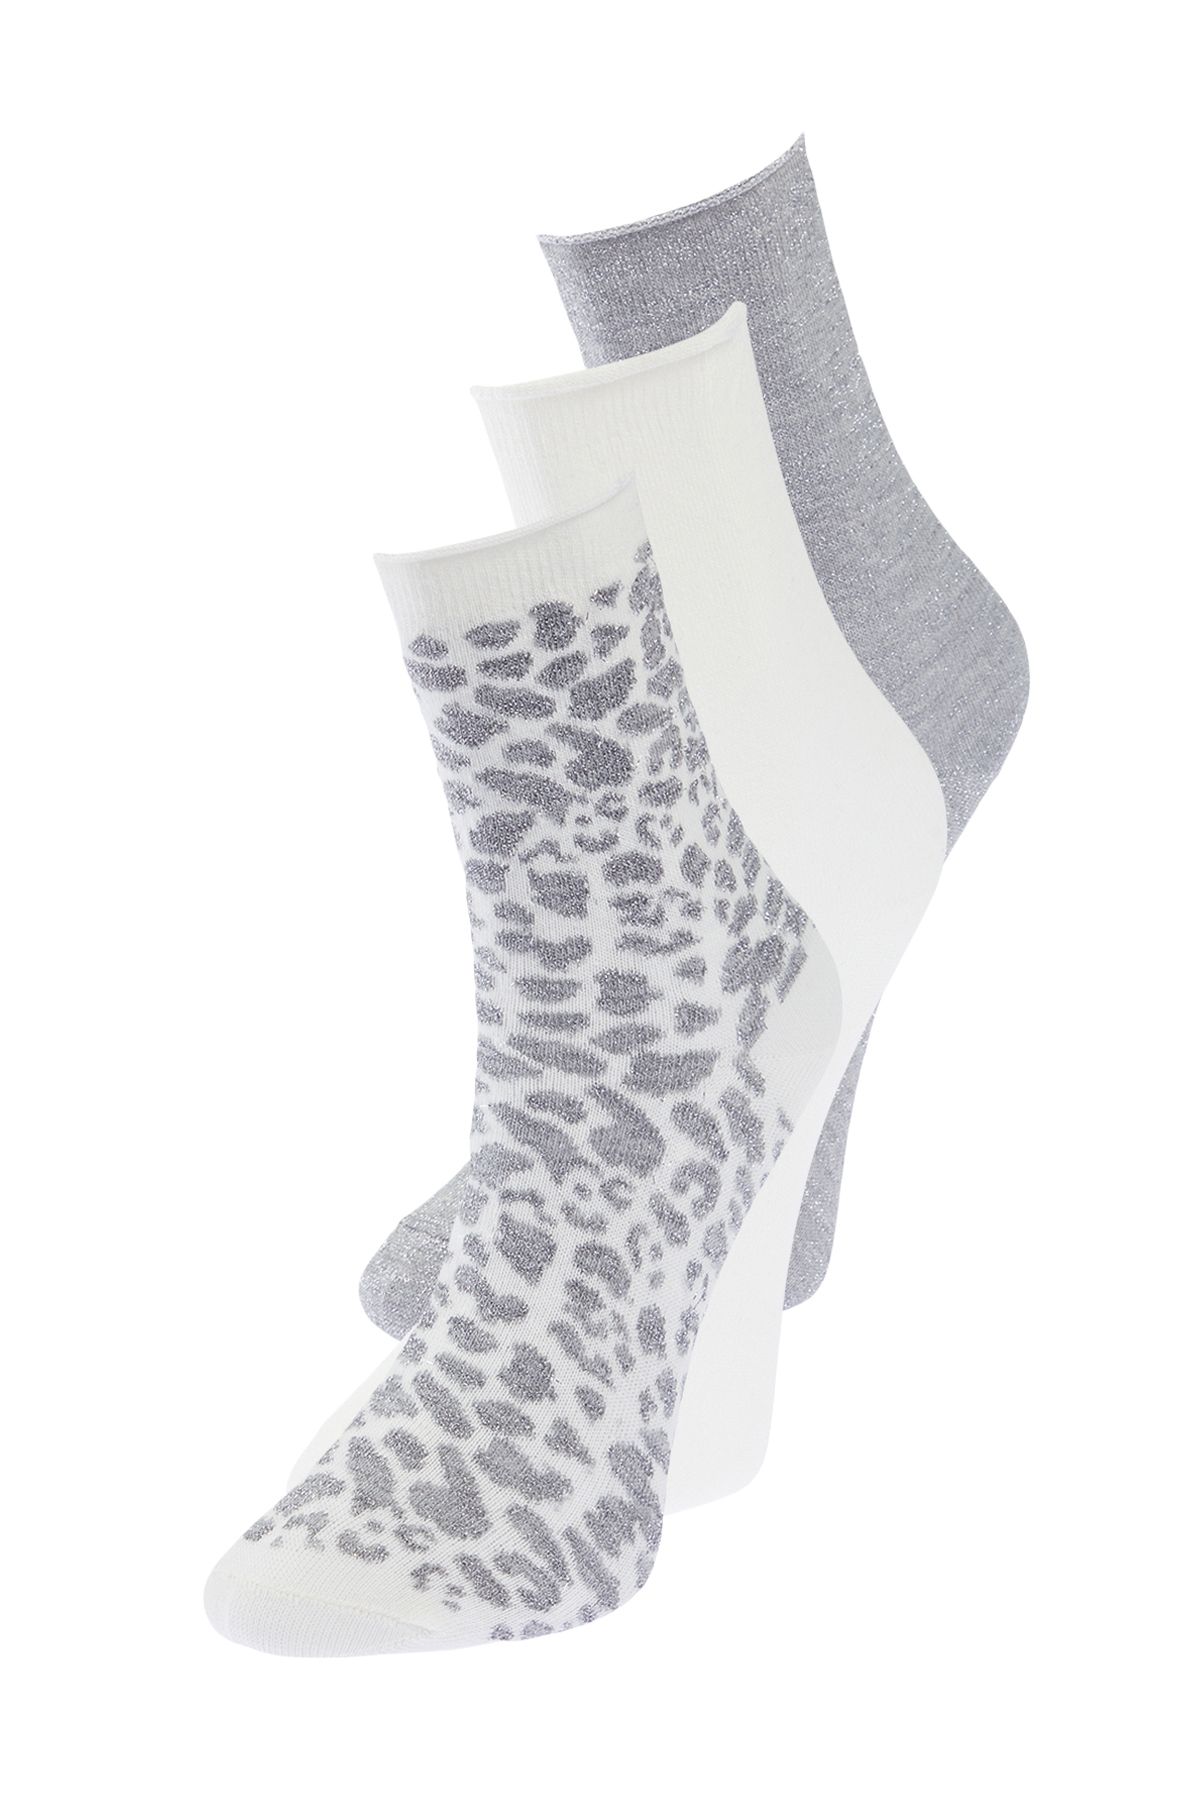 TRENDYOLMİLLA Gri-Çok Renkli 3'lü Paket Pamuklu Örme Çorap THMSS24CO00006